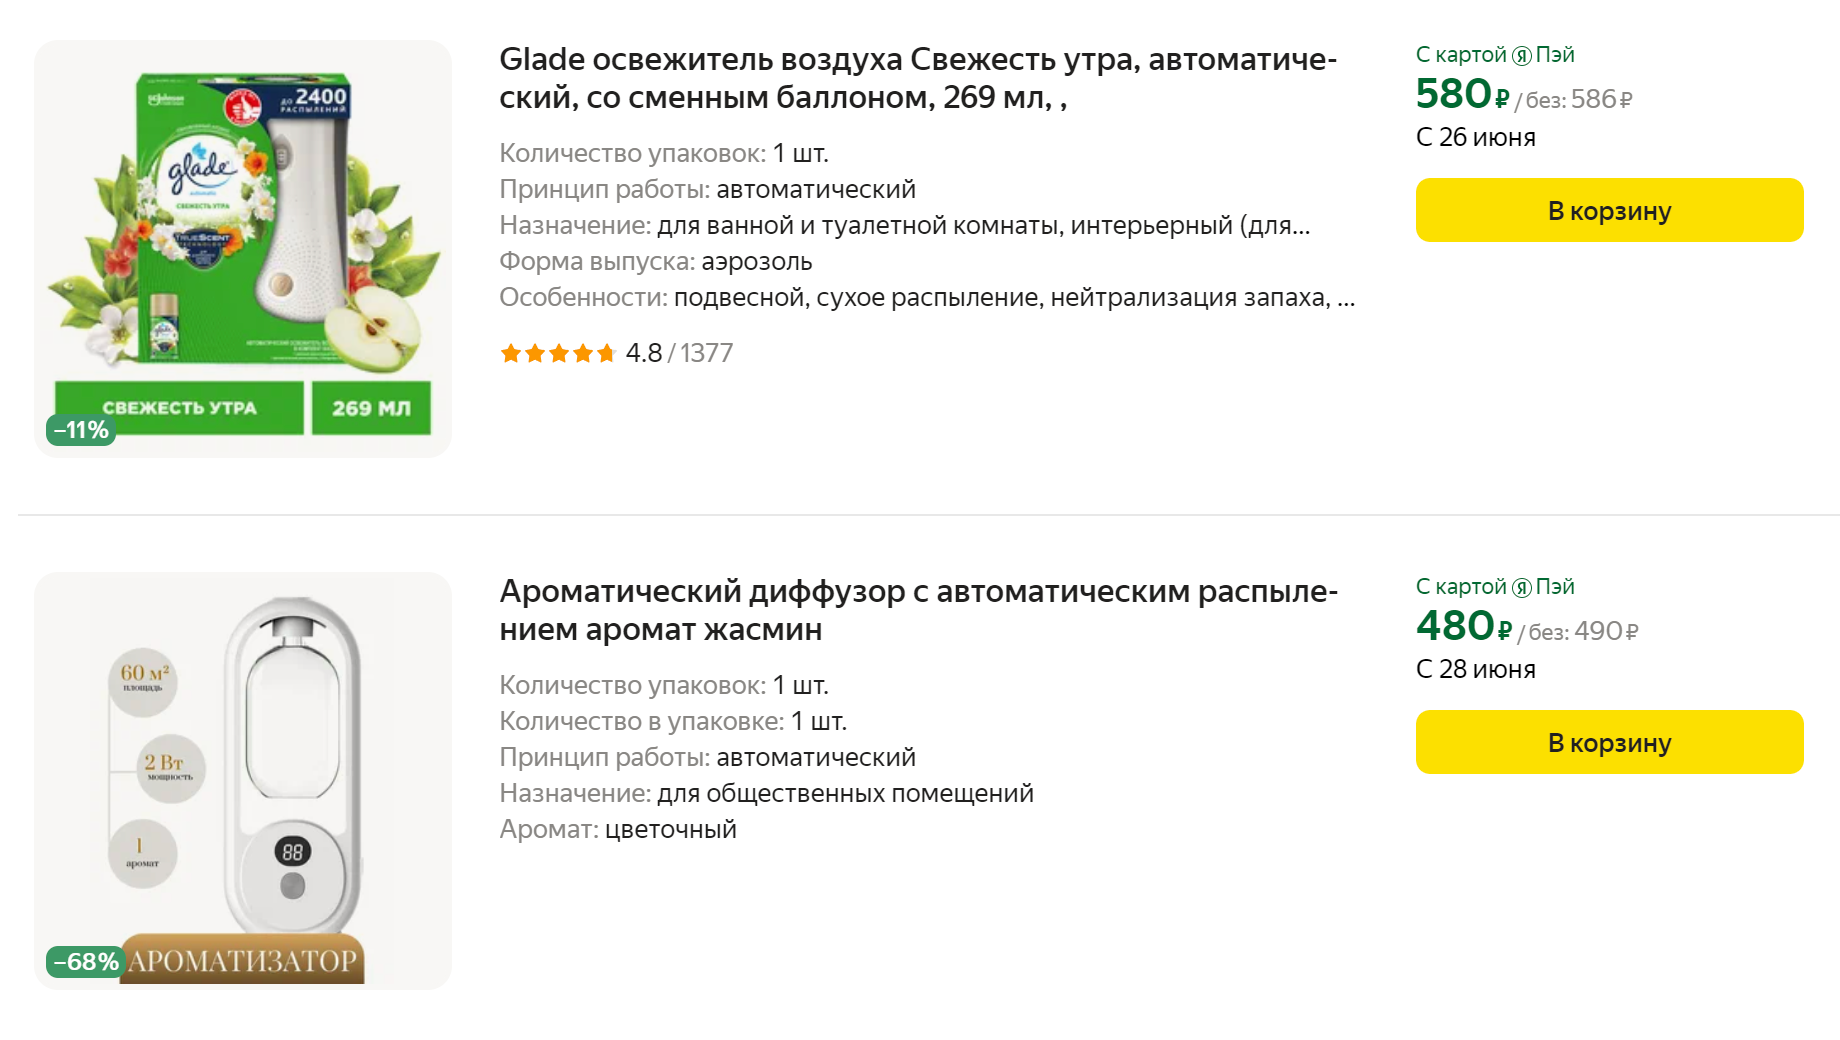 Разница в цене между простым и автоматическим освежителем несущественна, поэтому лучше сразу купить автоматический. Источник: market.yandex.ru